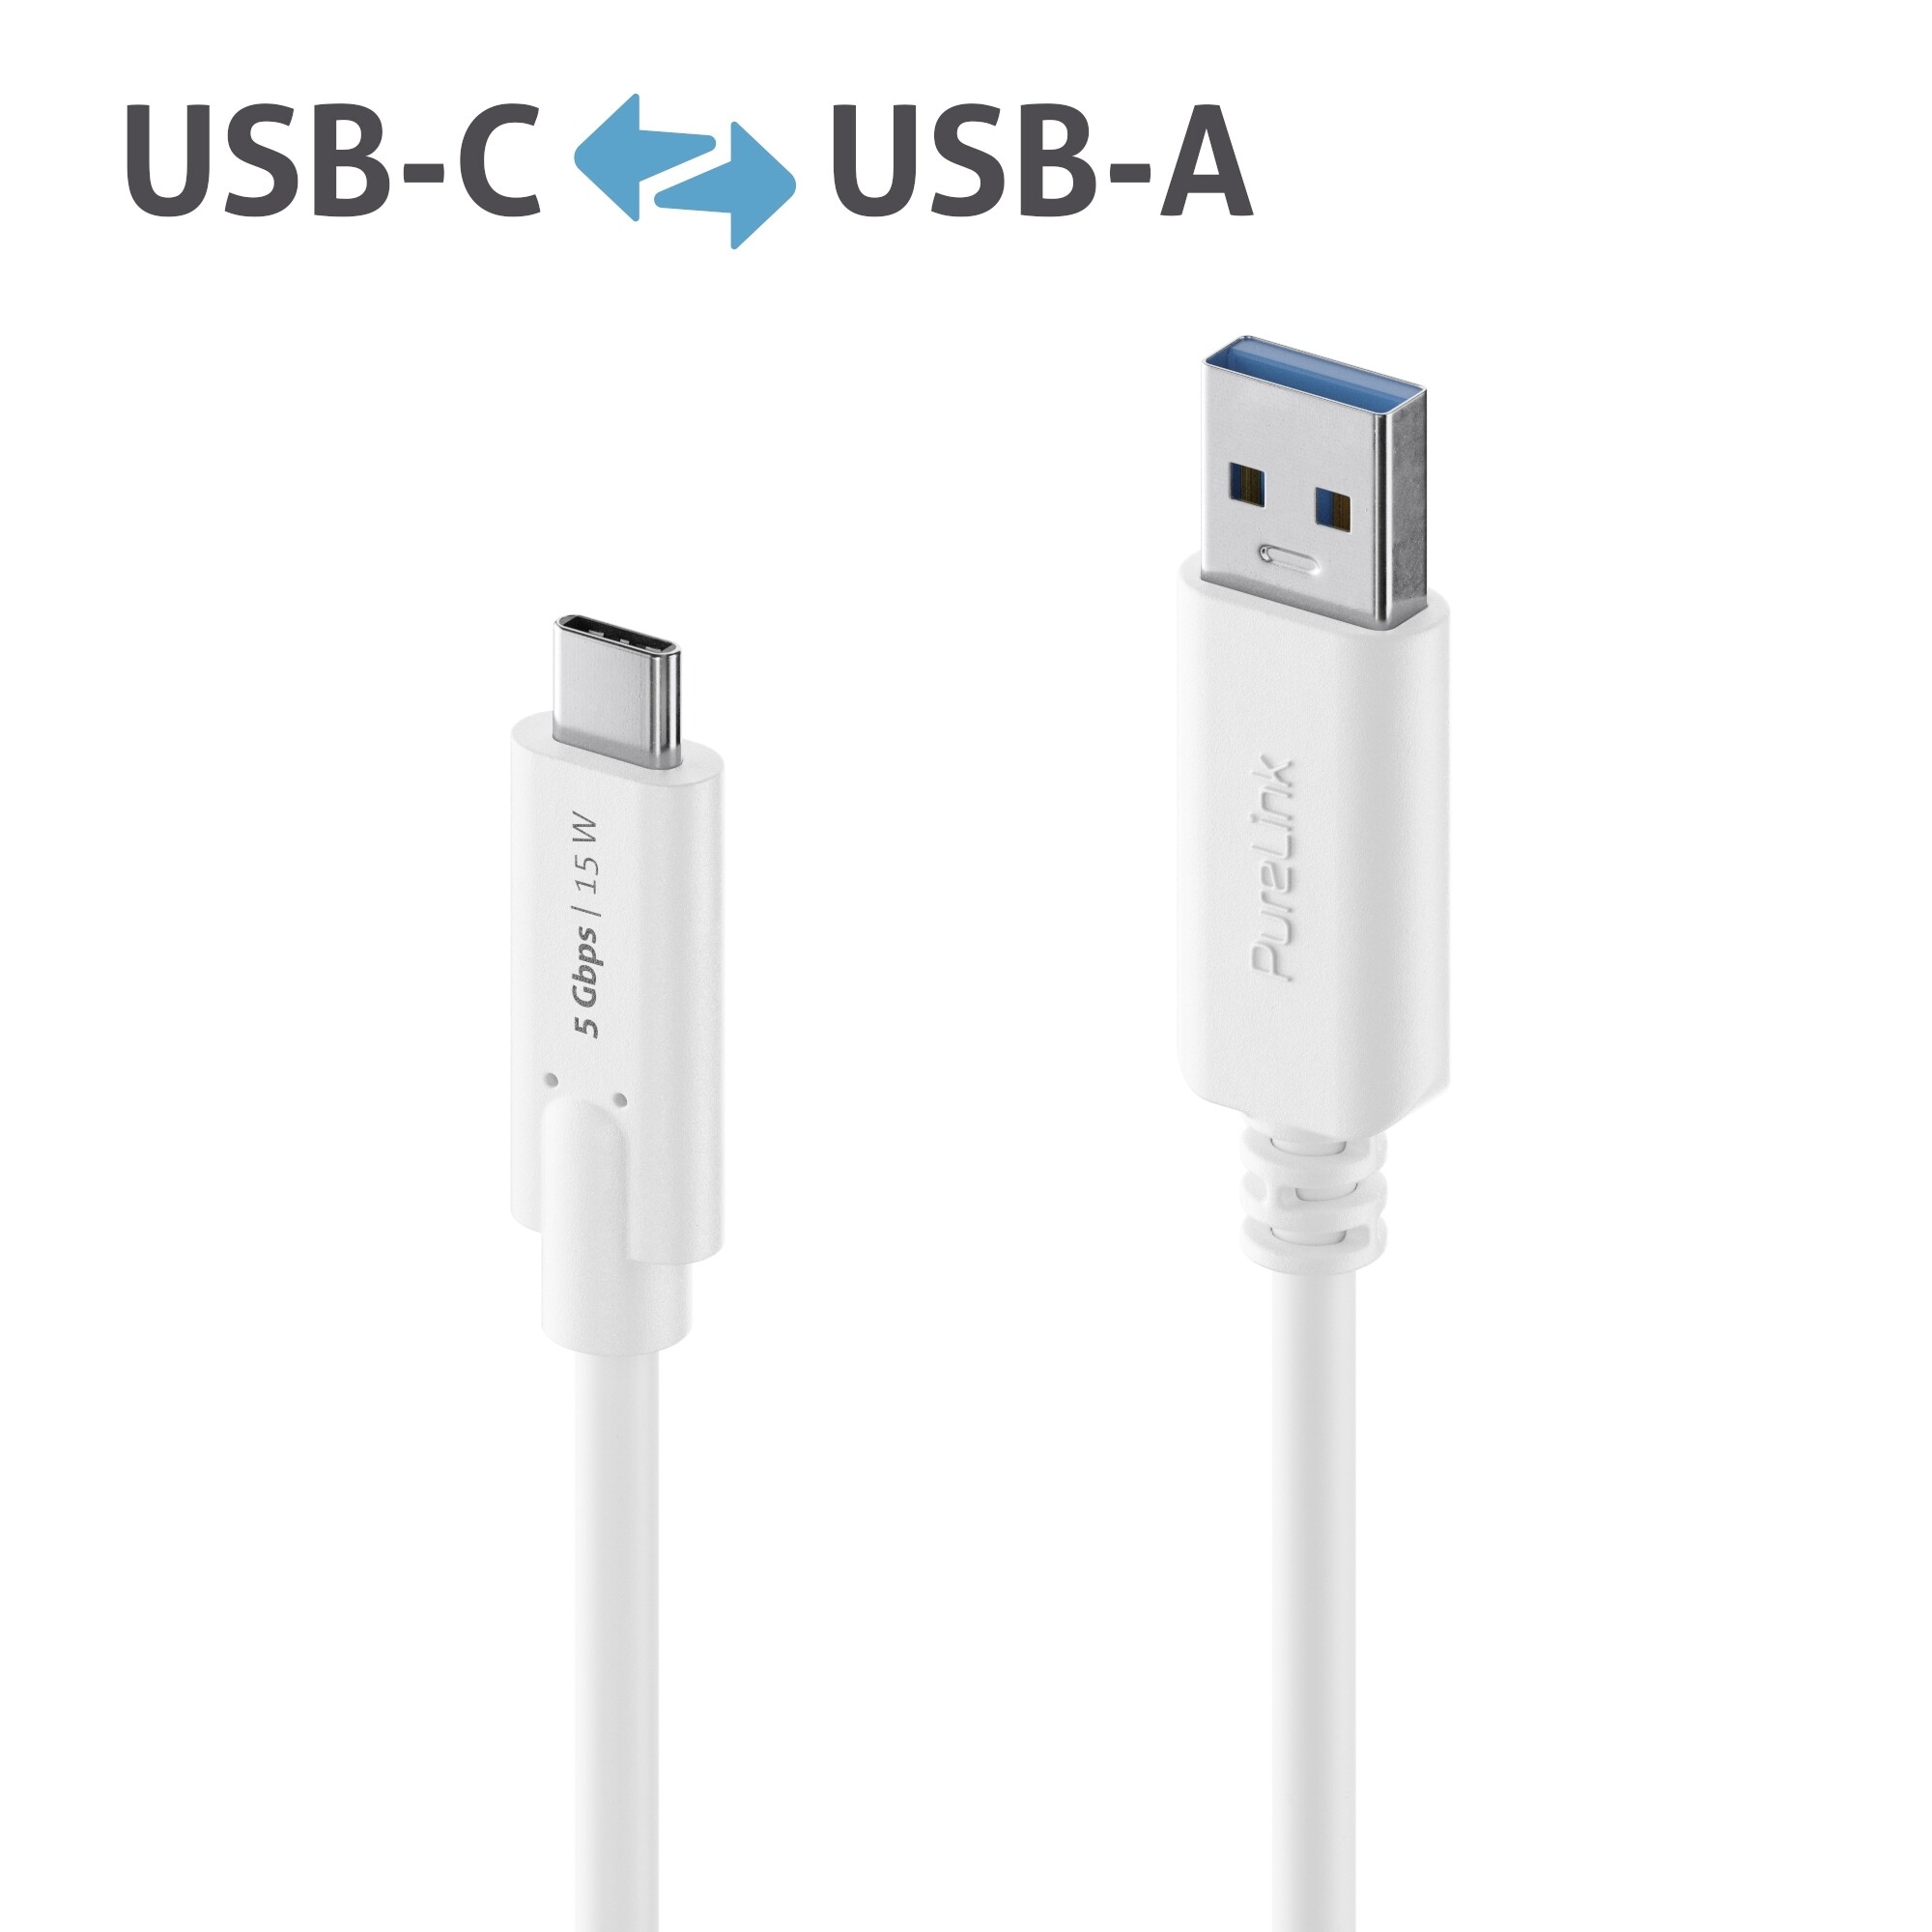 Purelink-IS2600-010-USB-C-auf-USB-A-Kabel-1m-weiss